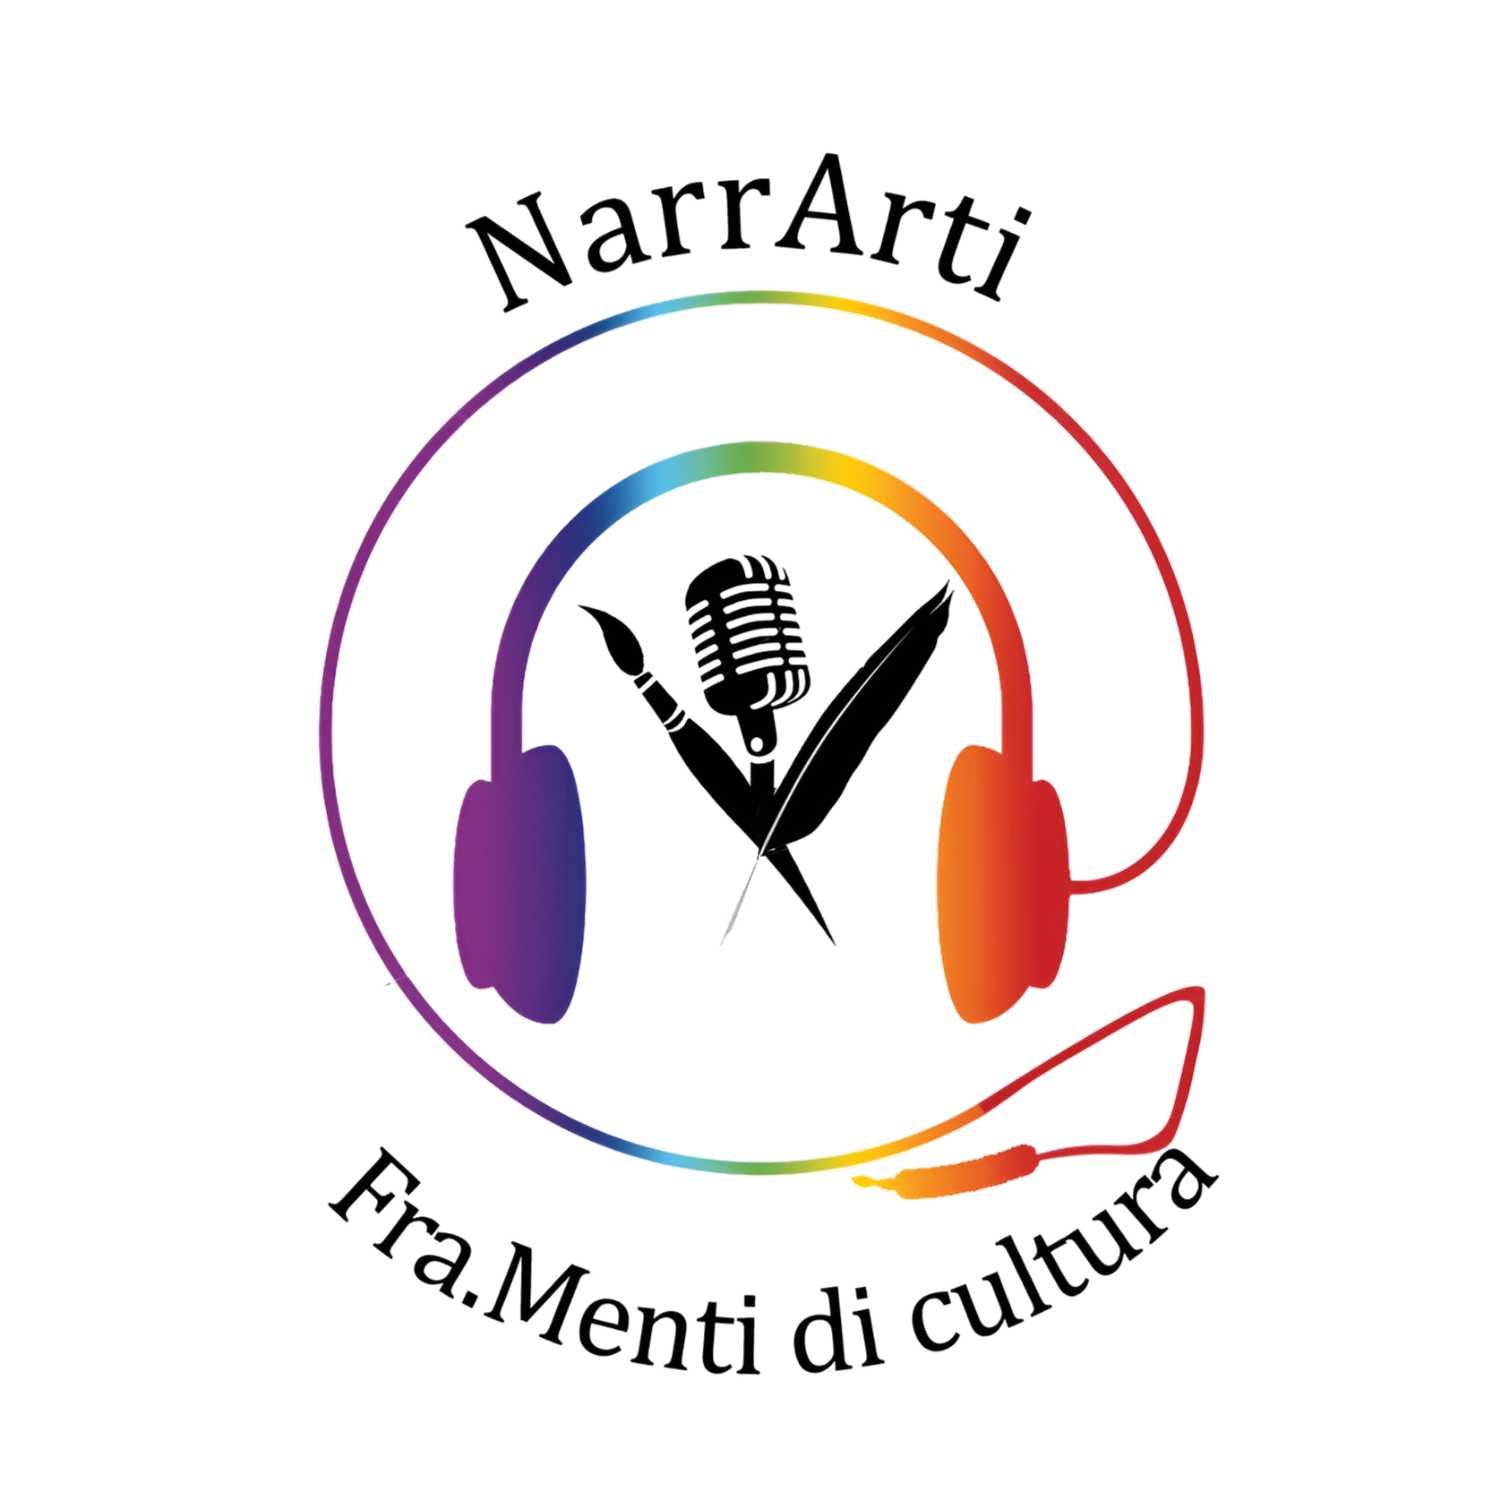 NarrArti: Fra.Menti di Cultura